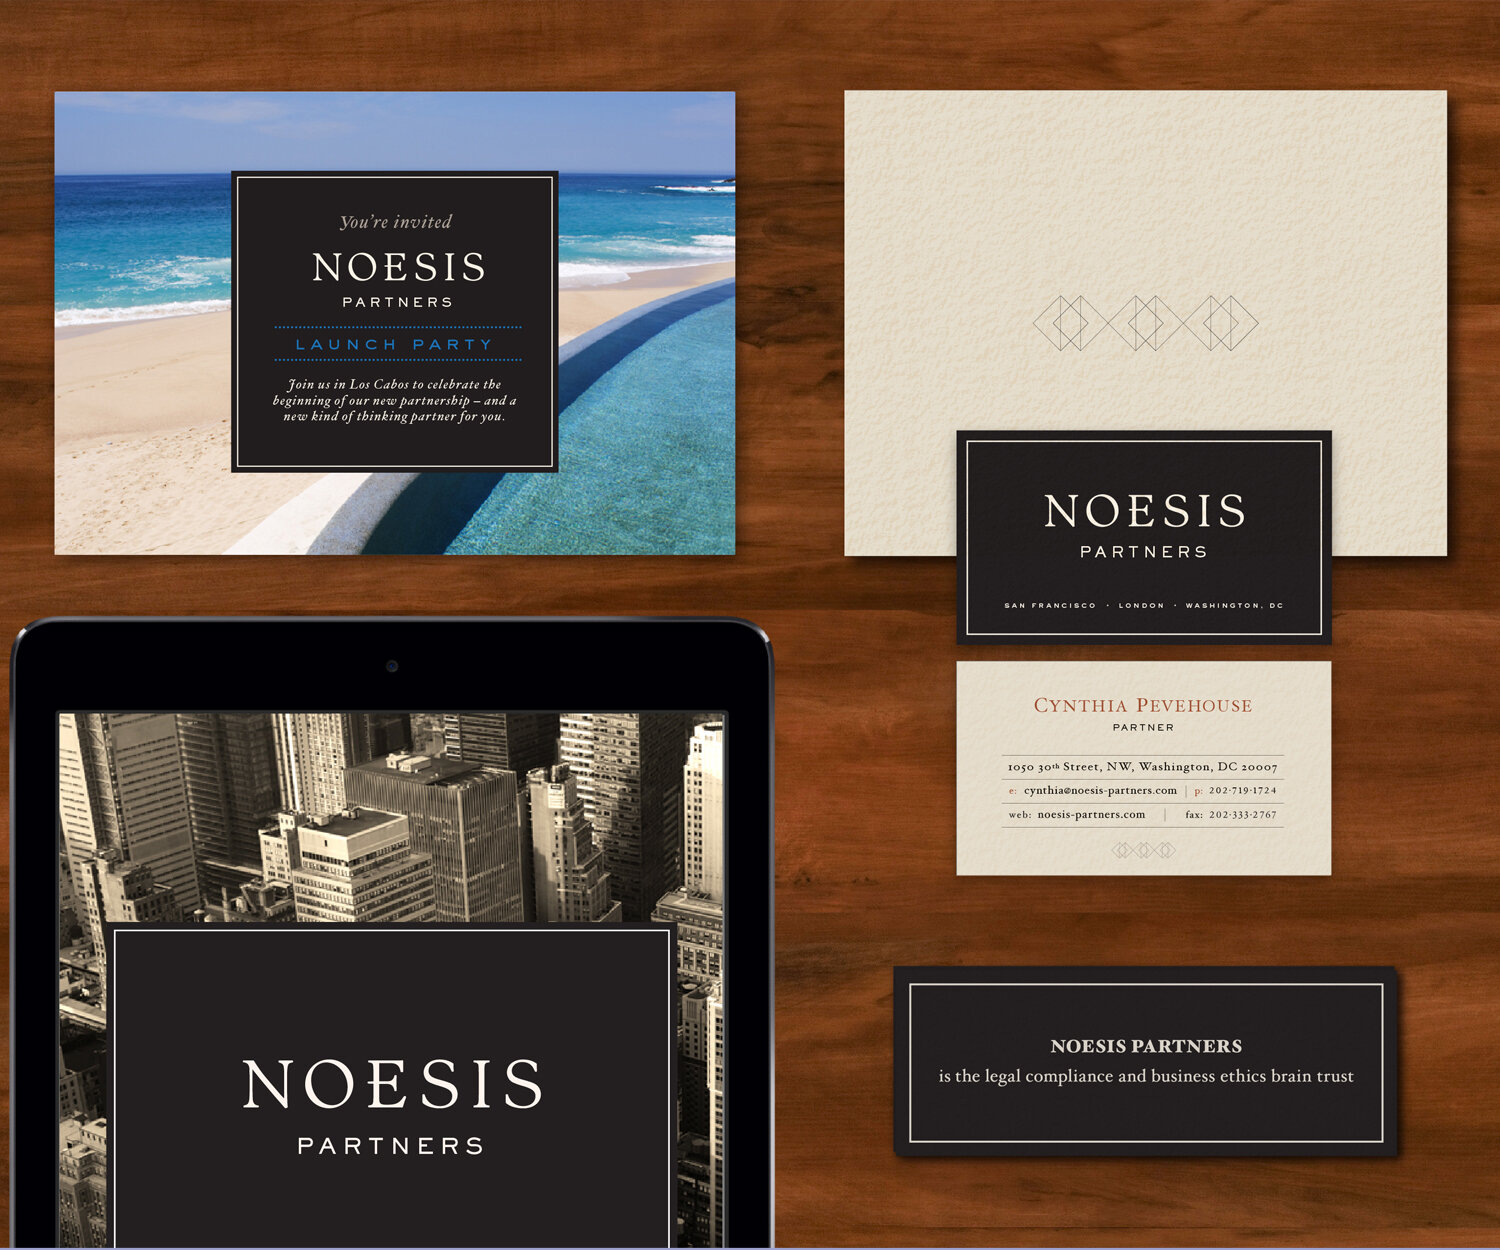 Noesis Partners